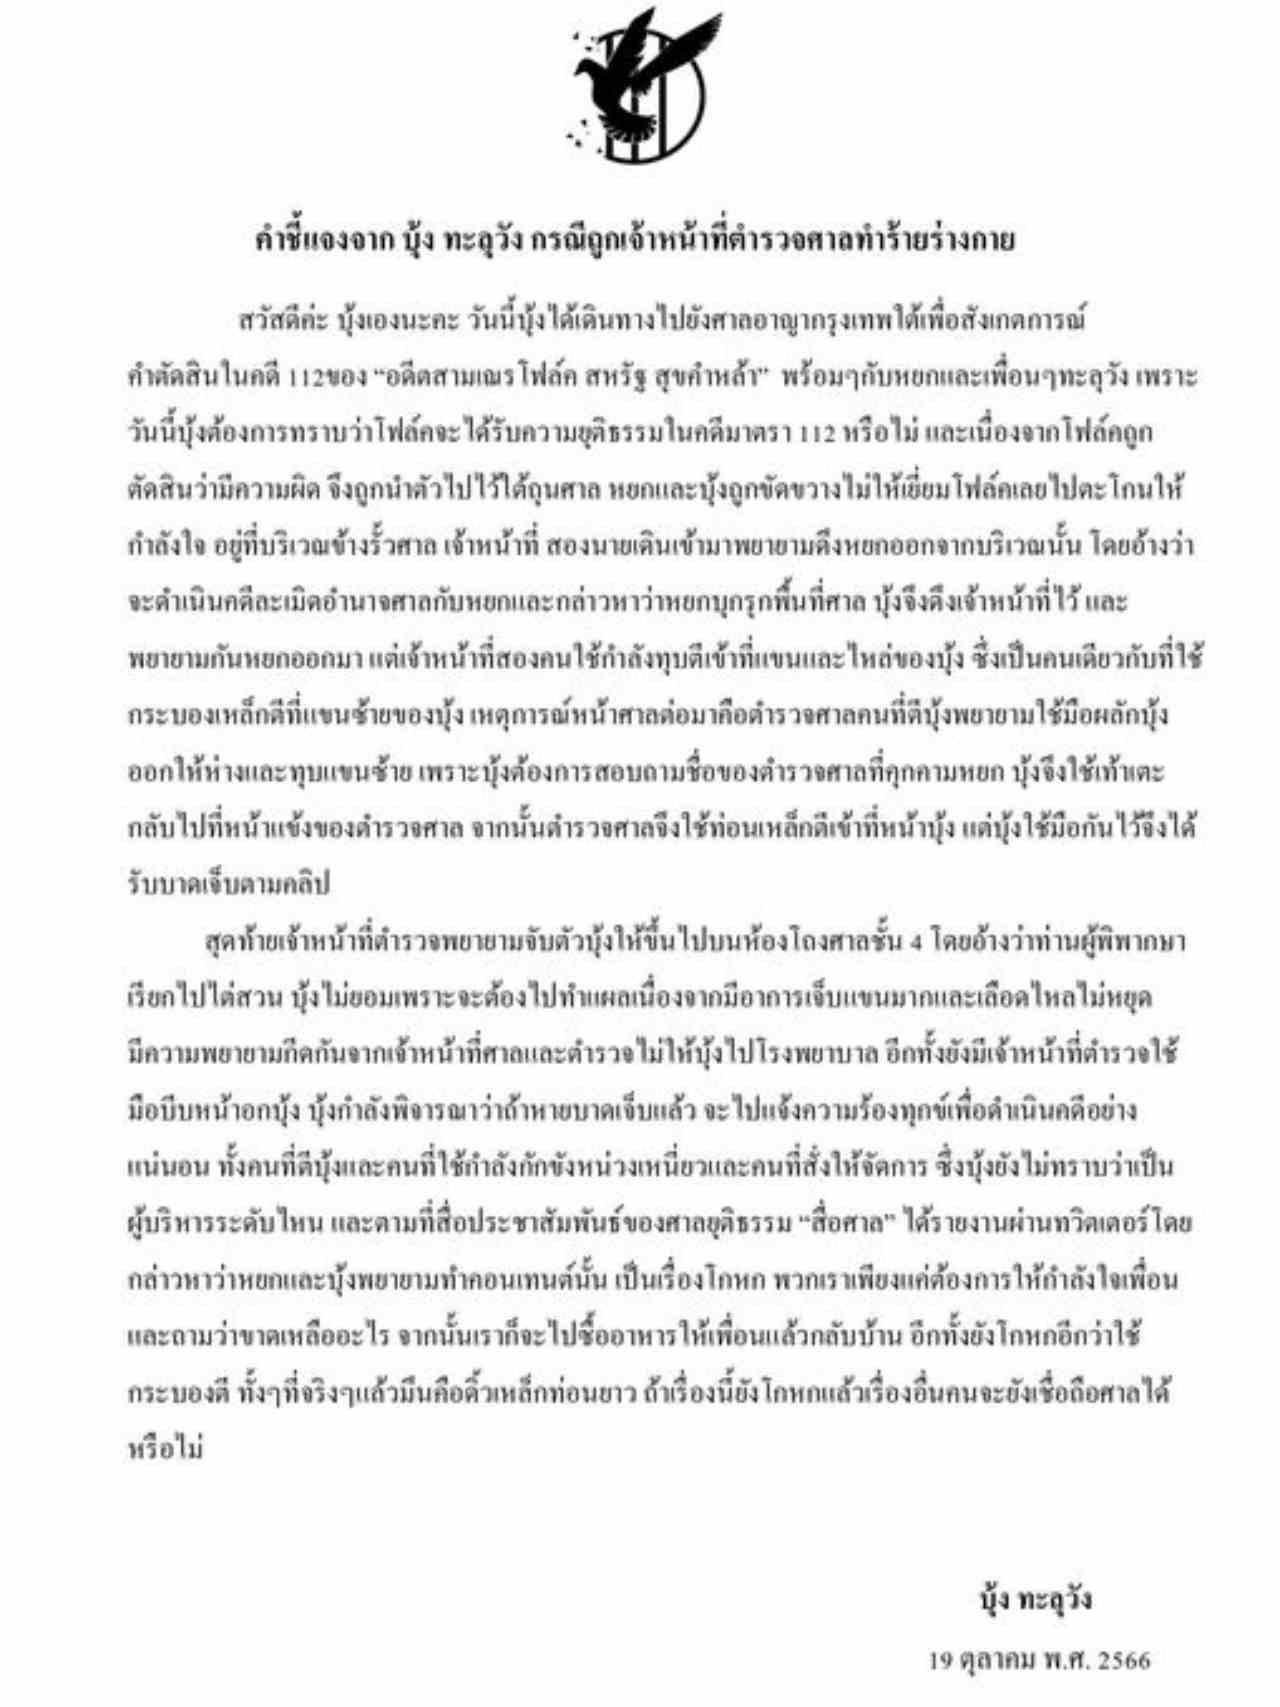 邦塔鲁旺活动团体成员遭遇泰国法警人身攻击